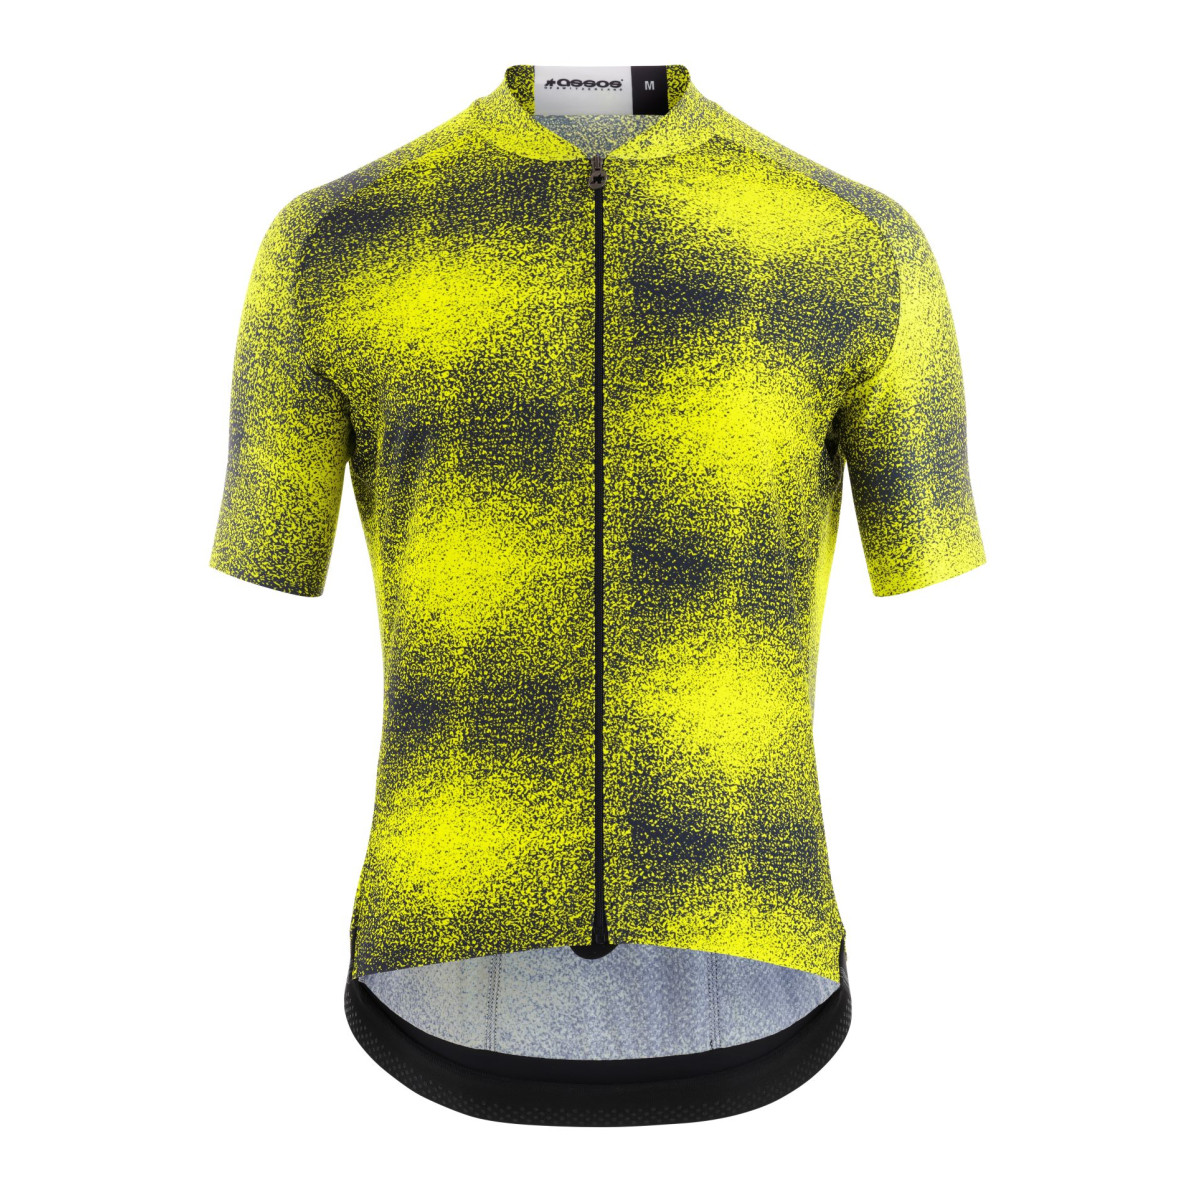 Assos Mille GT C2 Evo Zeus vyriški marškinėliai / Optic Yellow